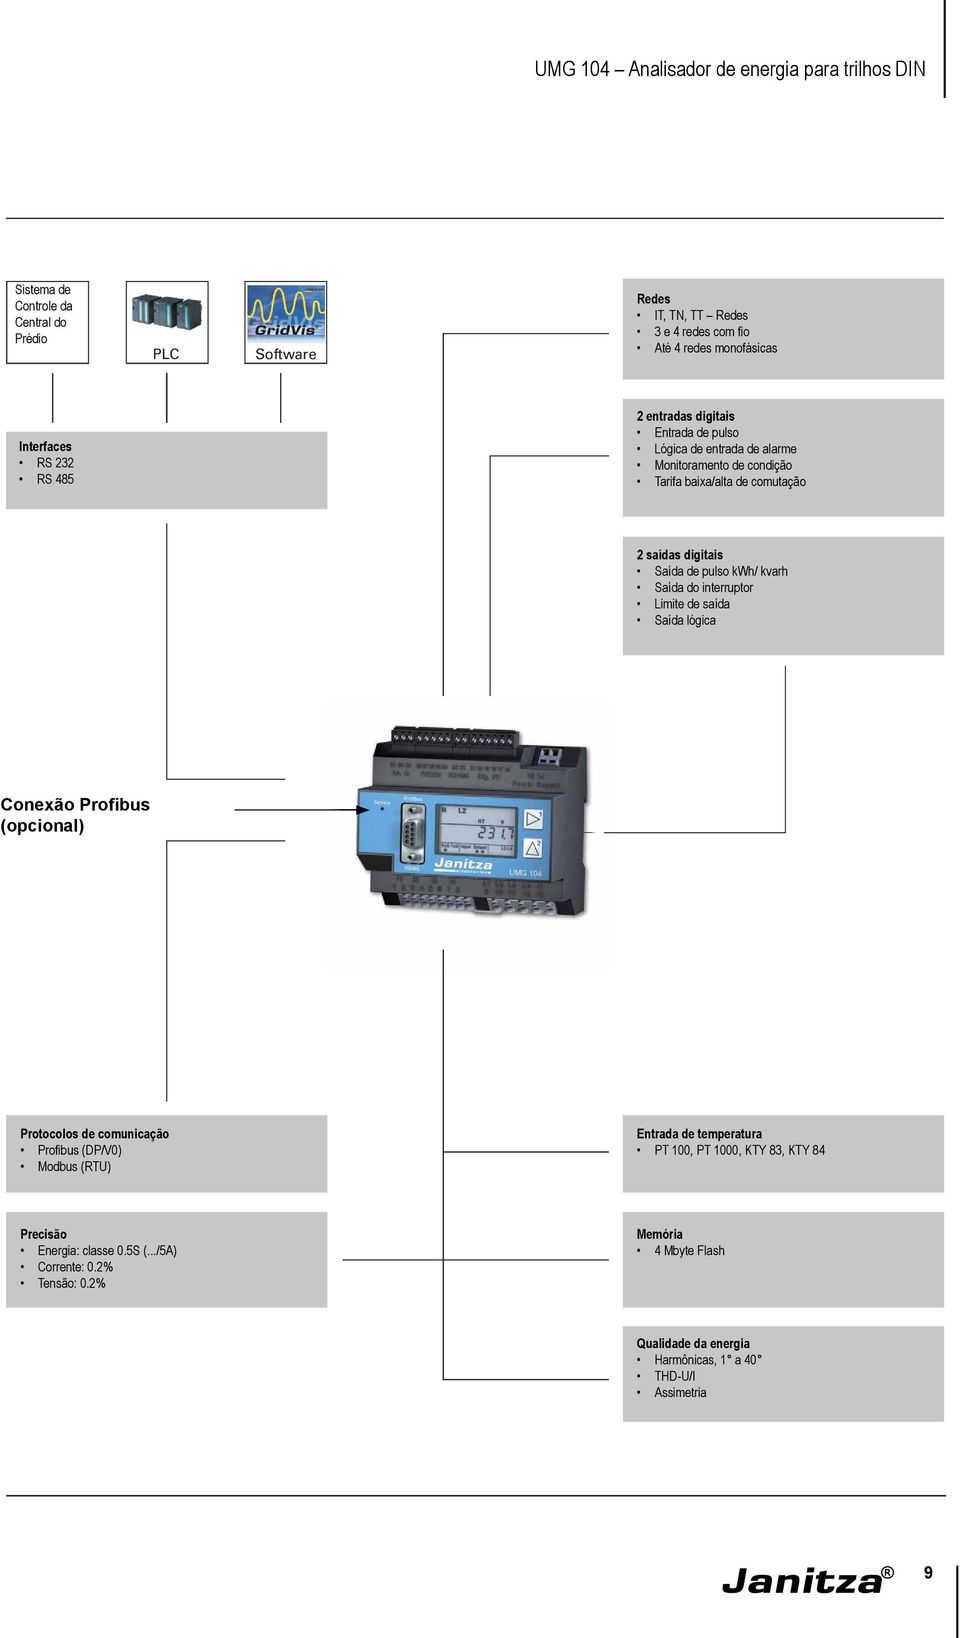 interruptor Limite de saída Saída lógica Conexão Profibus (opcional) Protocolos de comunicação Profibus (DP/V0) Modbus (RTU) Entrada de temperatura PT 100, PT